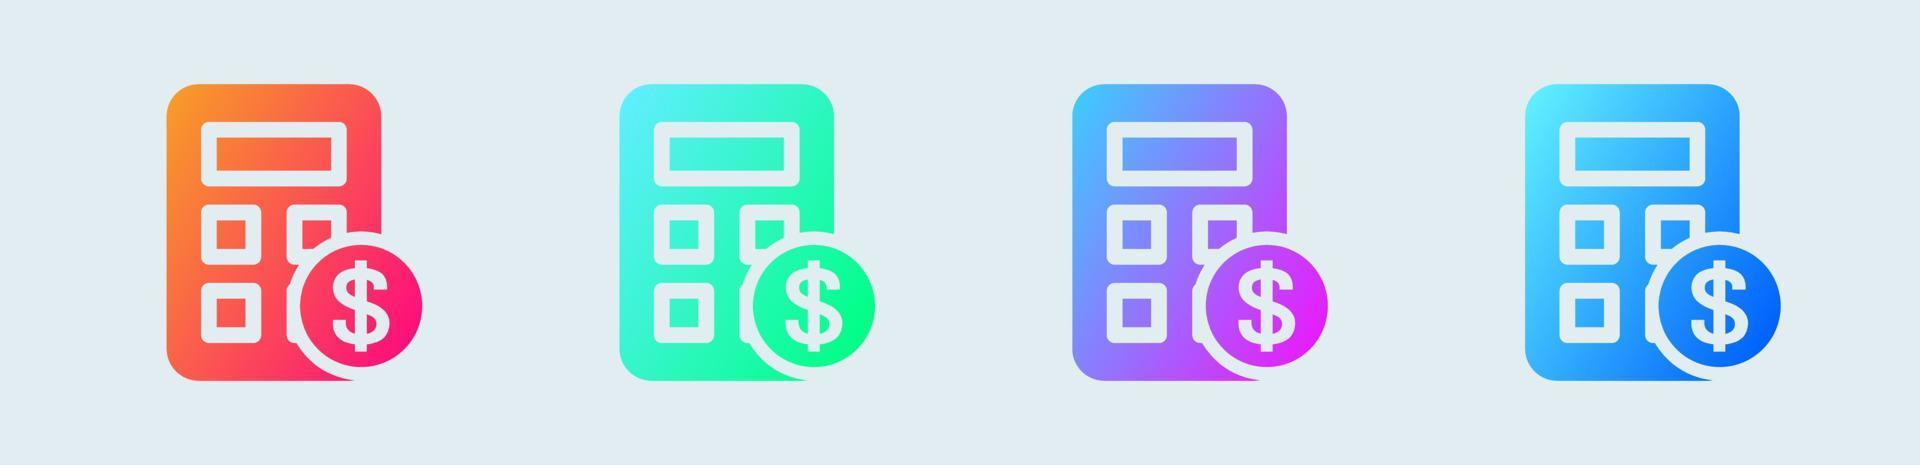 icono sólido de la calculadora en colores degradados. ilustración de vector de signos de finanzas.